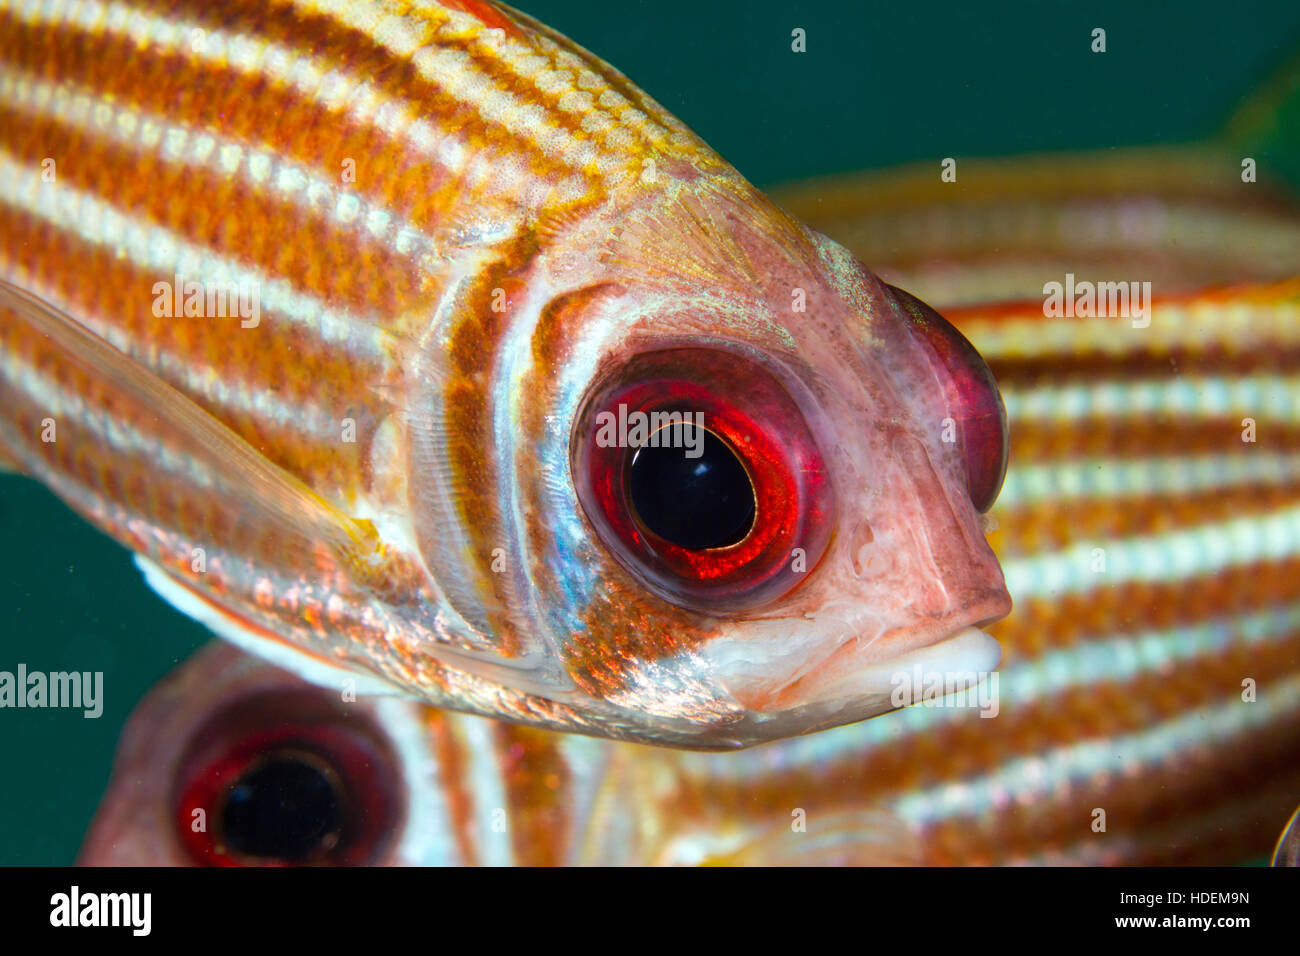 Pesce Come Immagini e Fotos Stock - Alamy